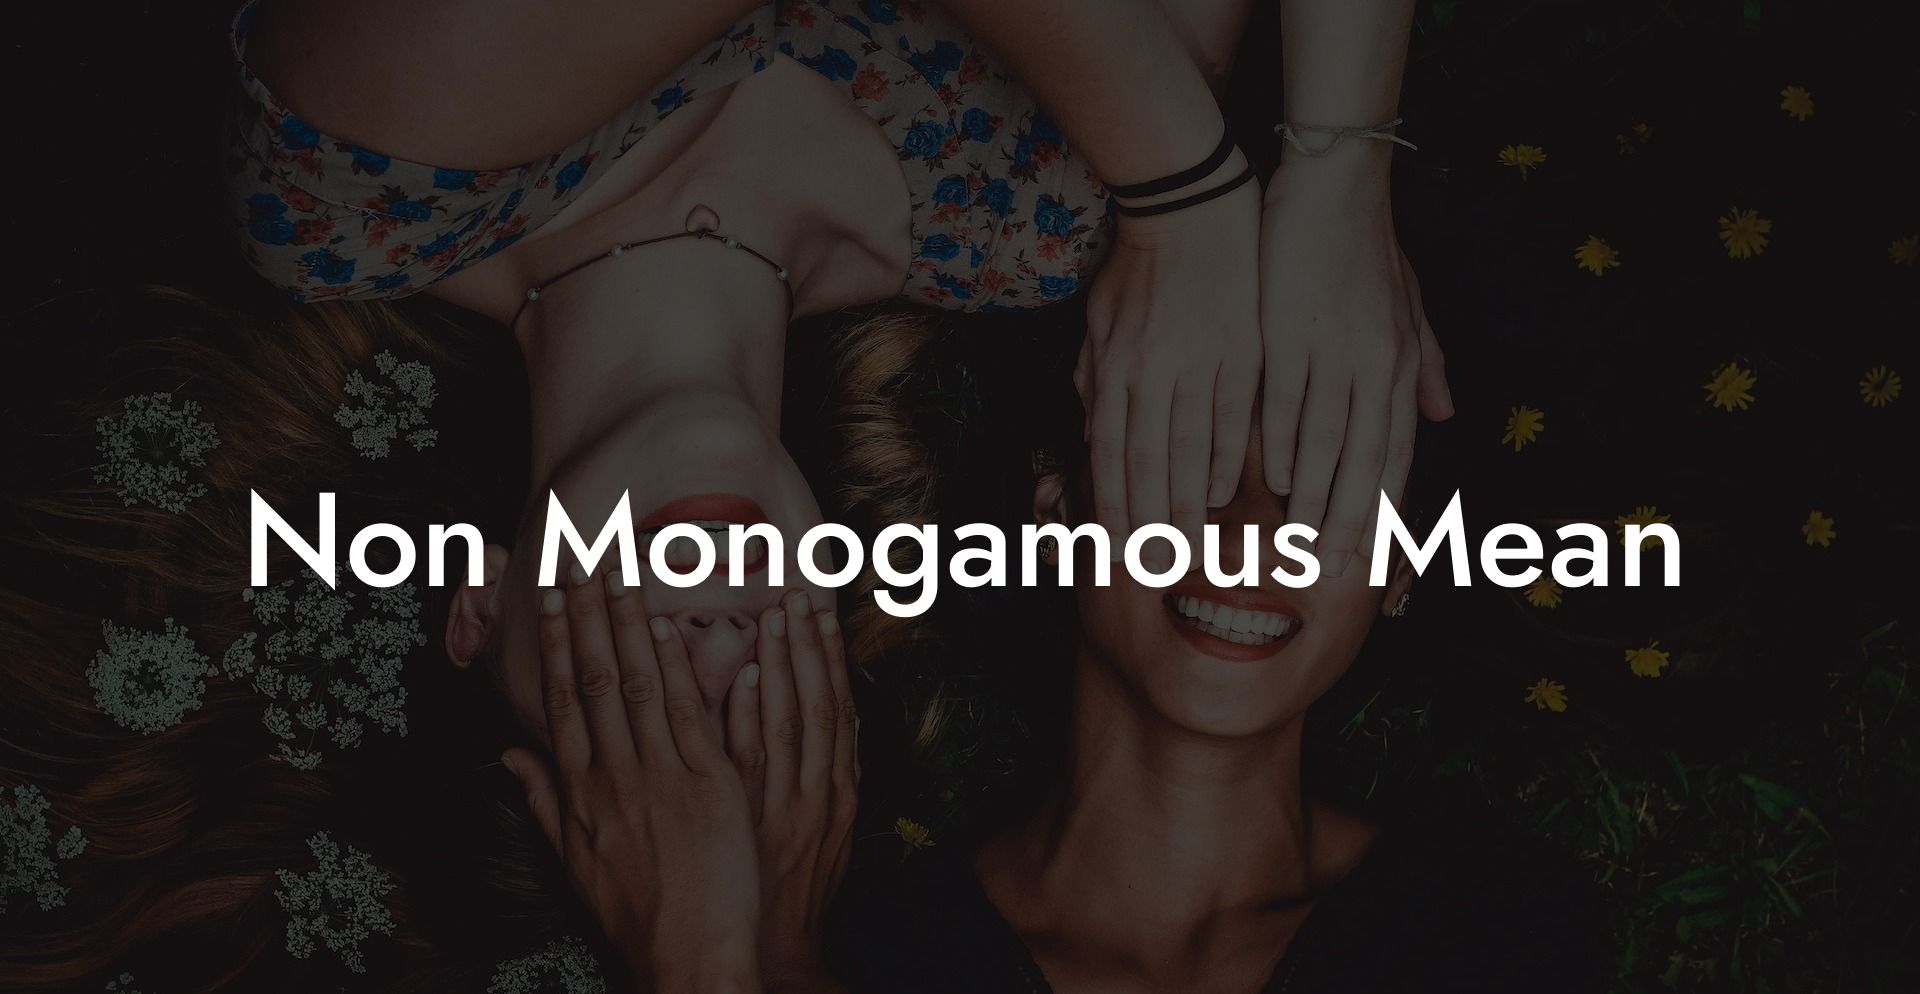 Non Monogamous Mean